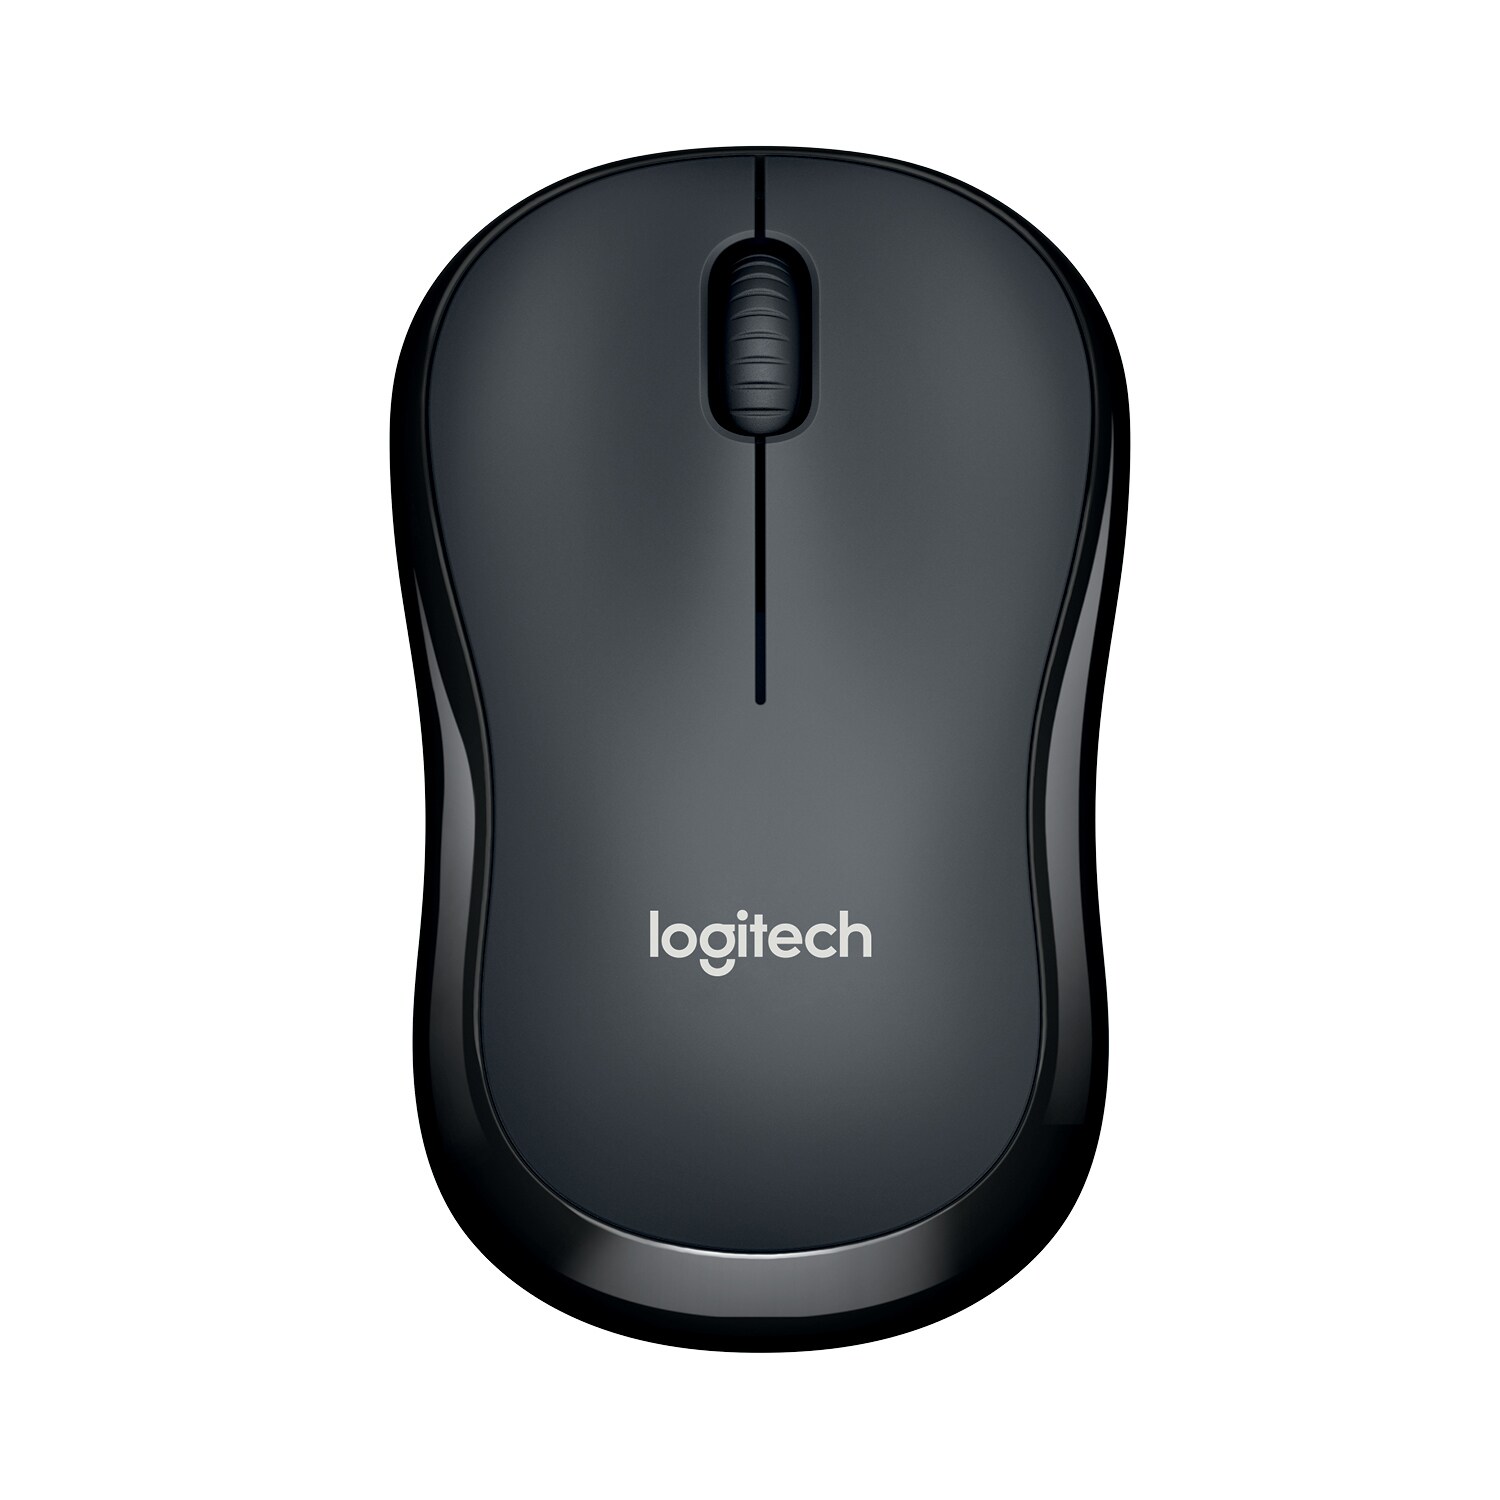 Logitech M220 Silent trådløs mus - sort - Computermus - Elgiganten